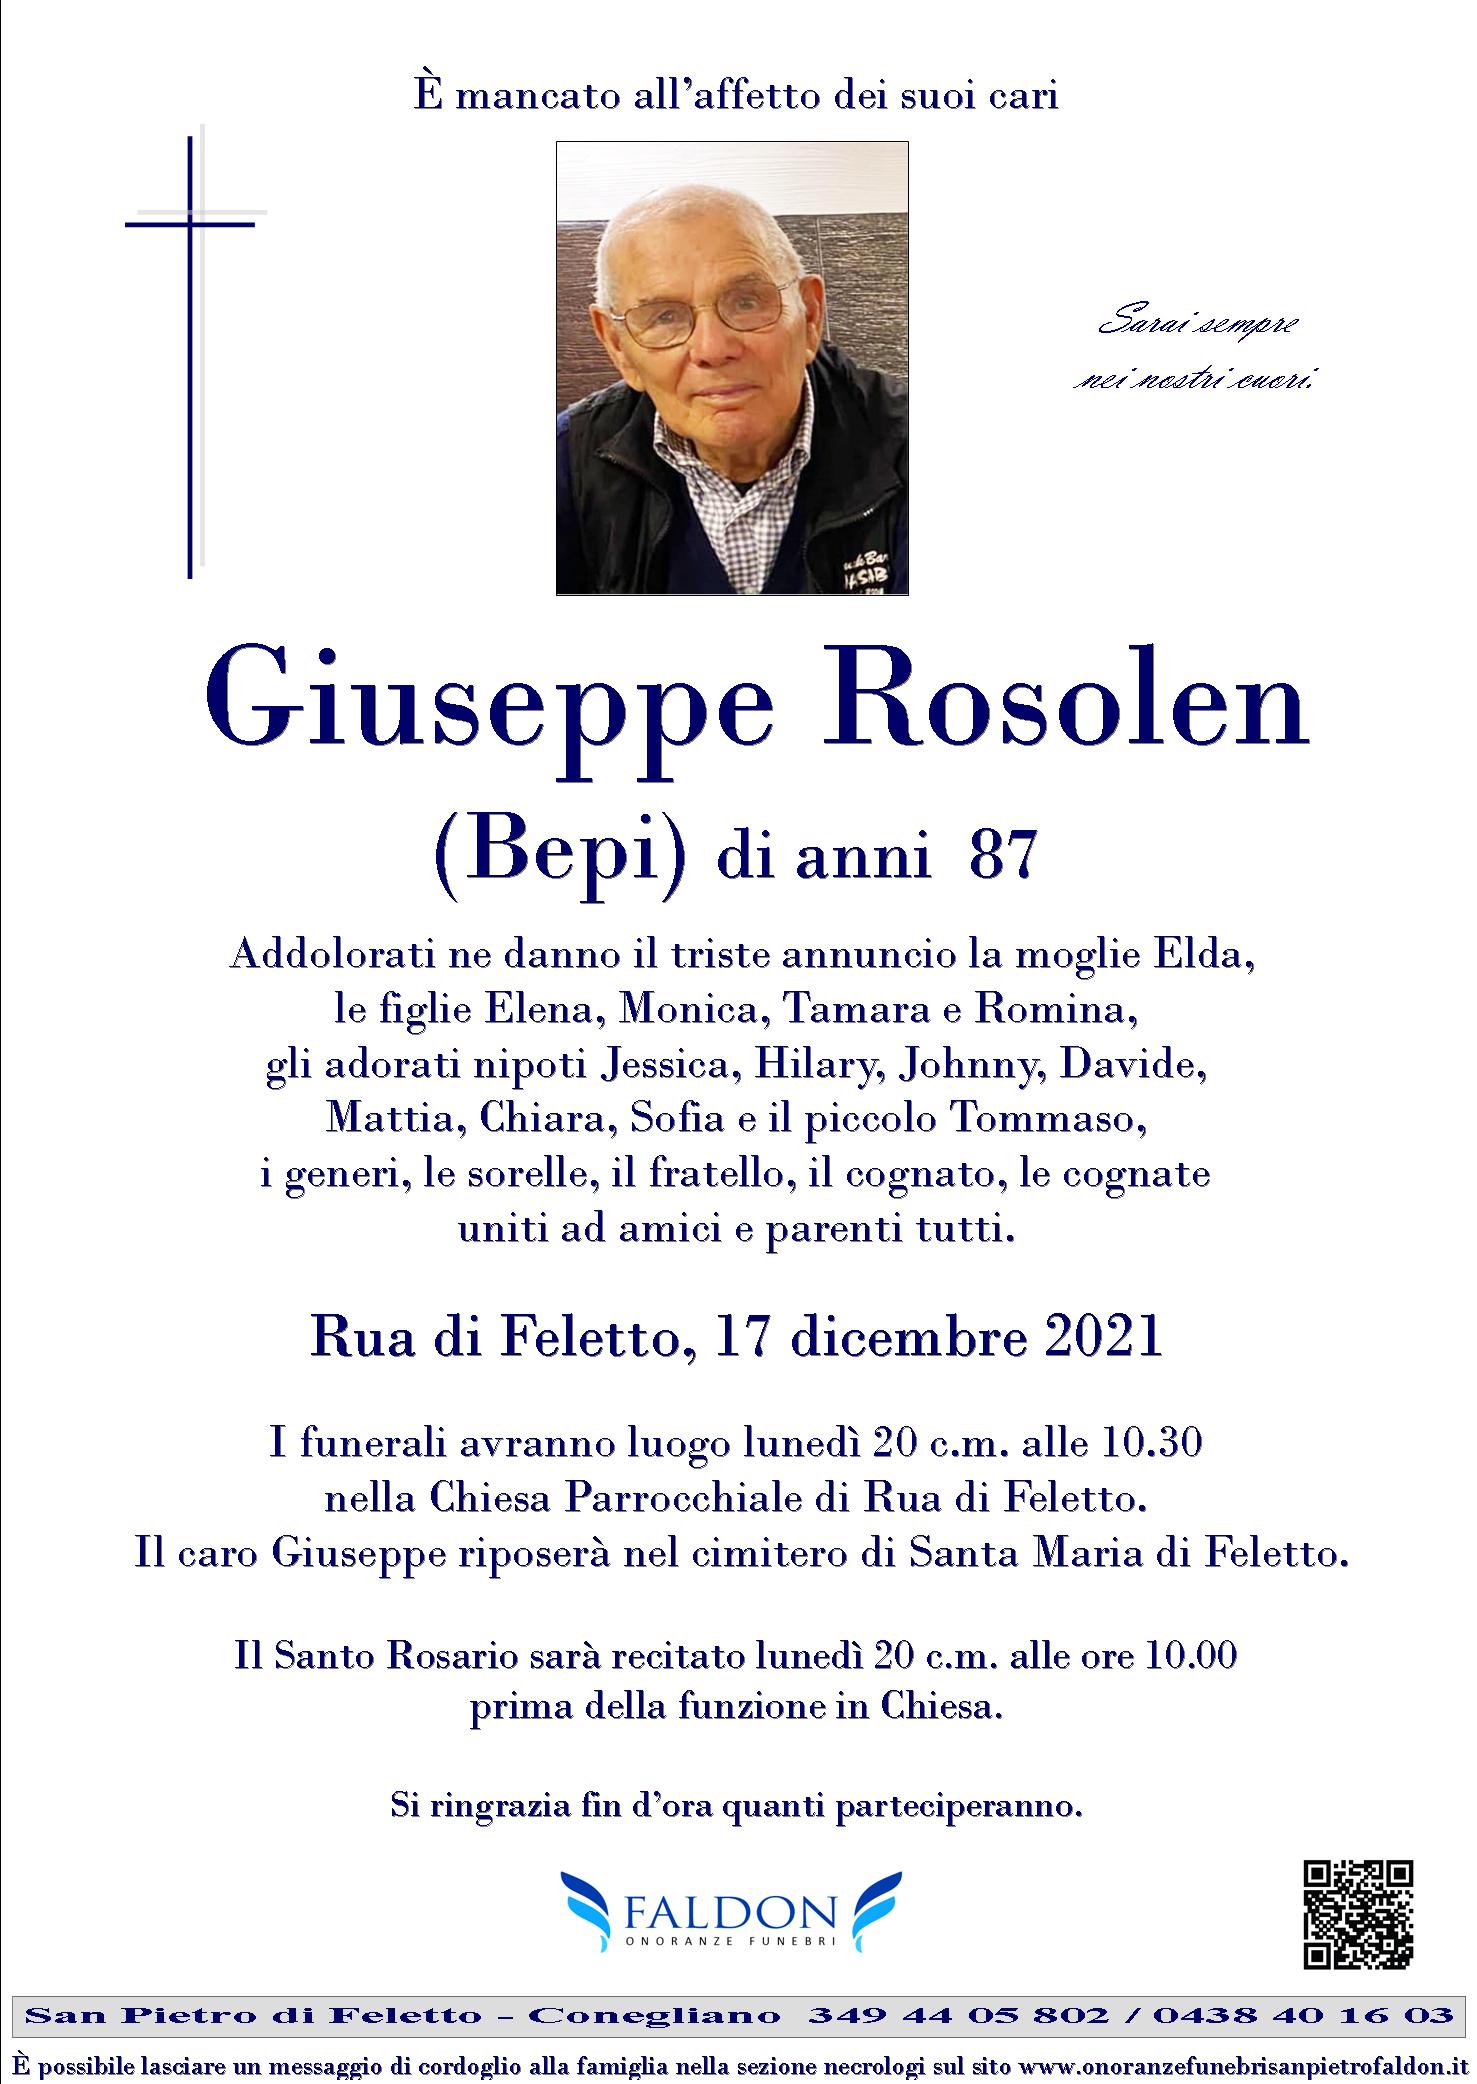 Giuseppe Rosolen